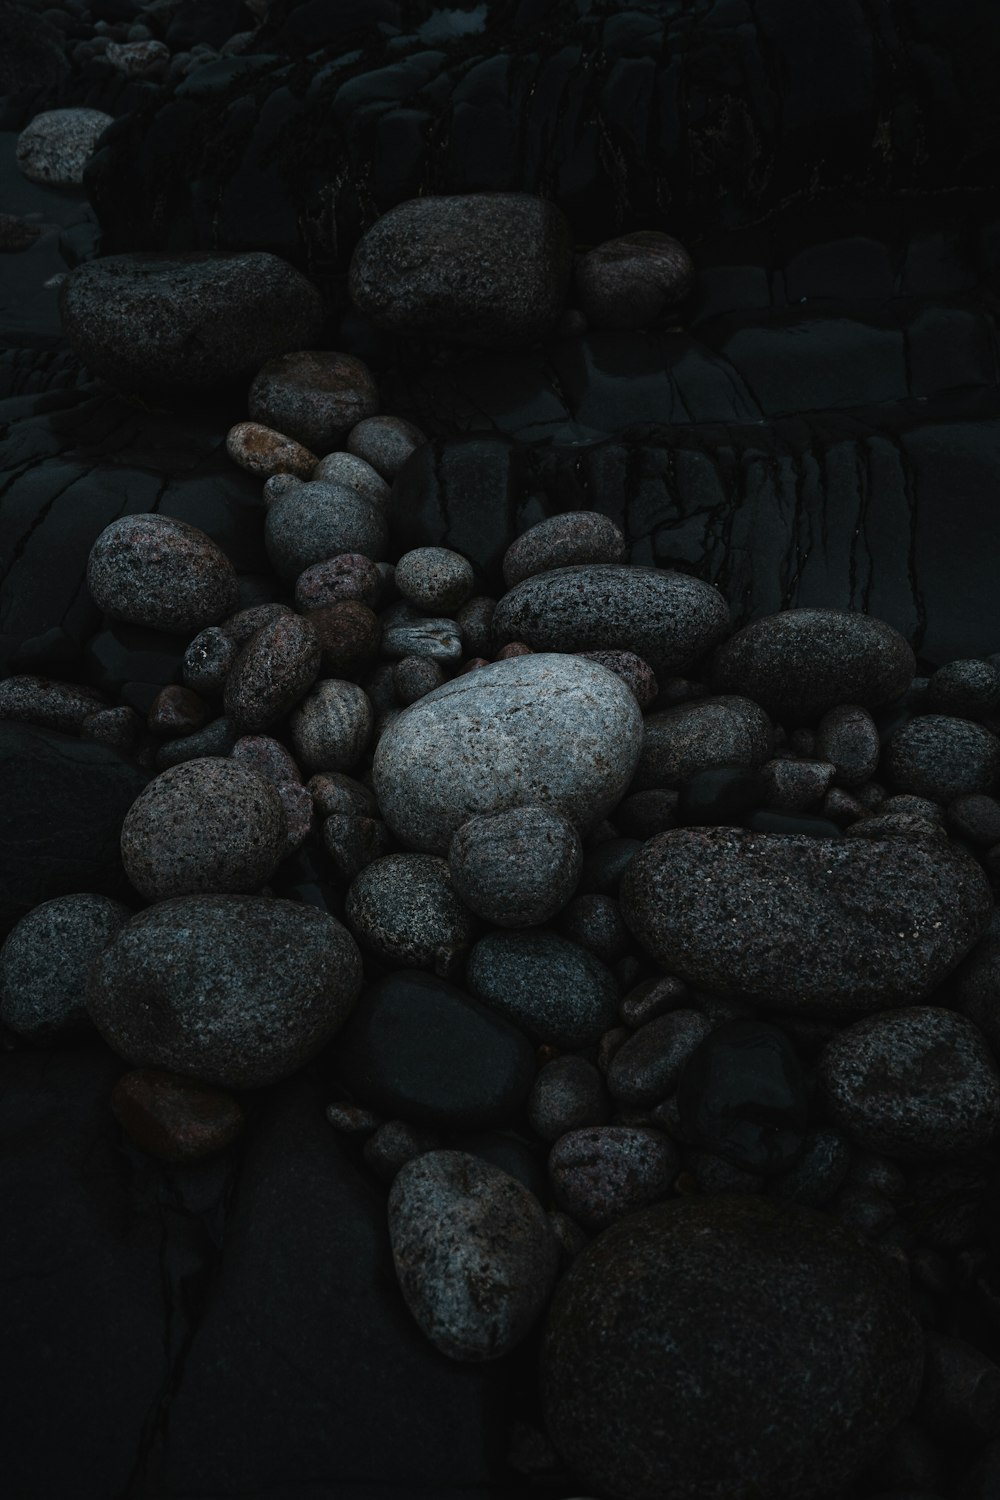 un mucchio di rocce seduto in cima a una spiaggia